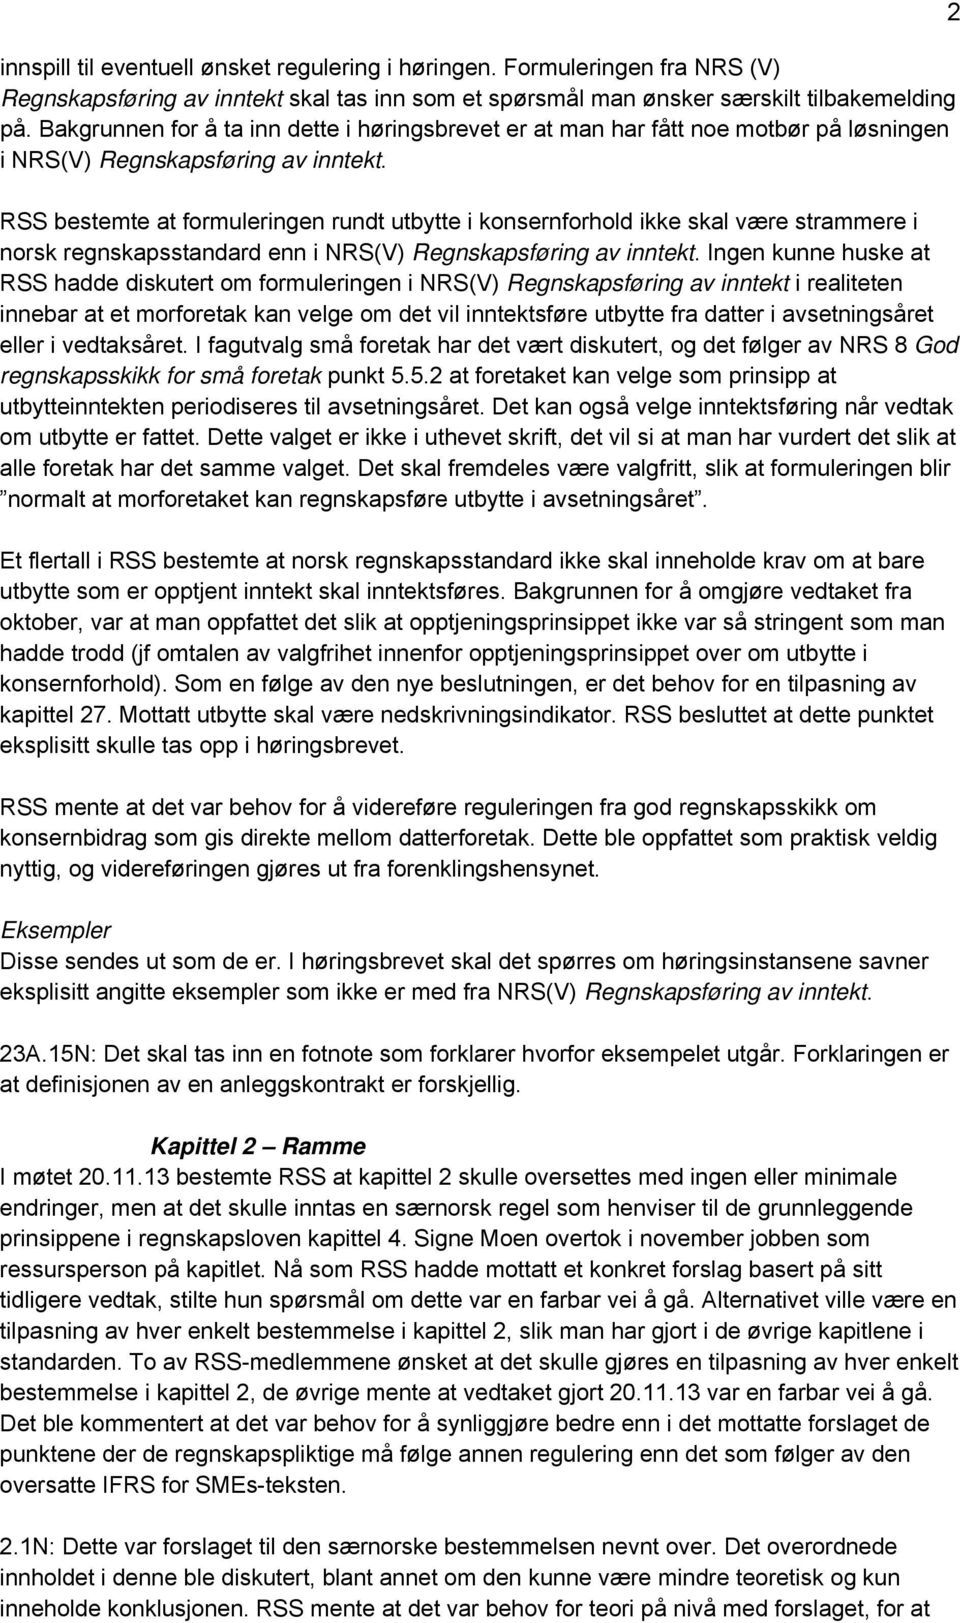 RSS bestemte at formuleringen rundt utbytte i konsernforhold ikke skal være strammere i norsk regnskapsstandard enn i NRS(V) Regnskapsføring av inntekt.